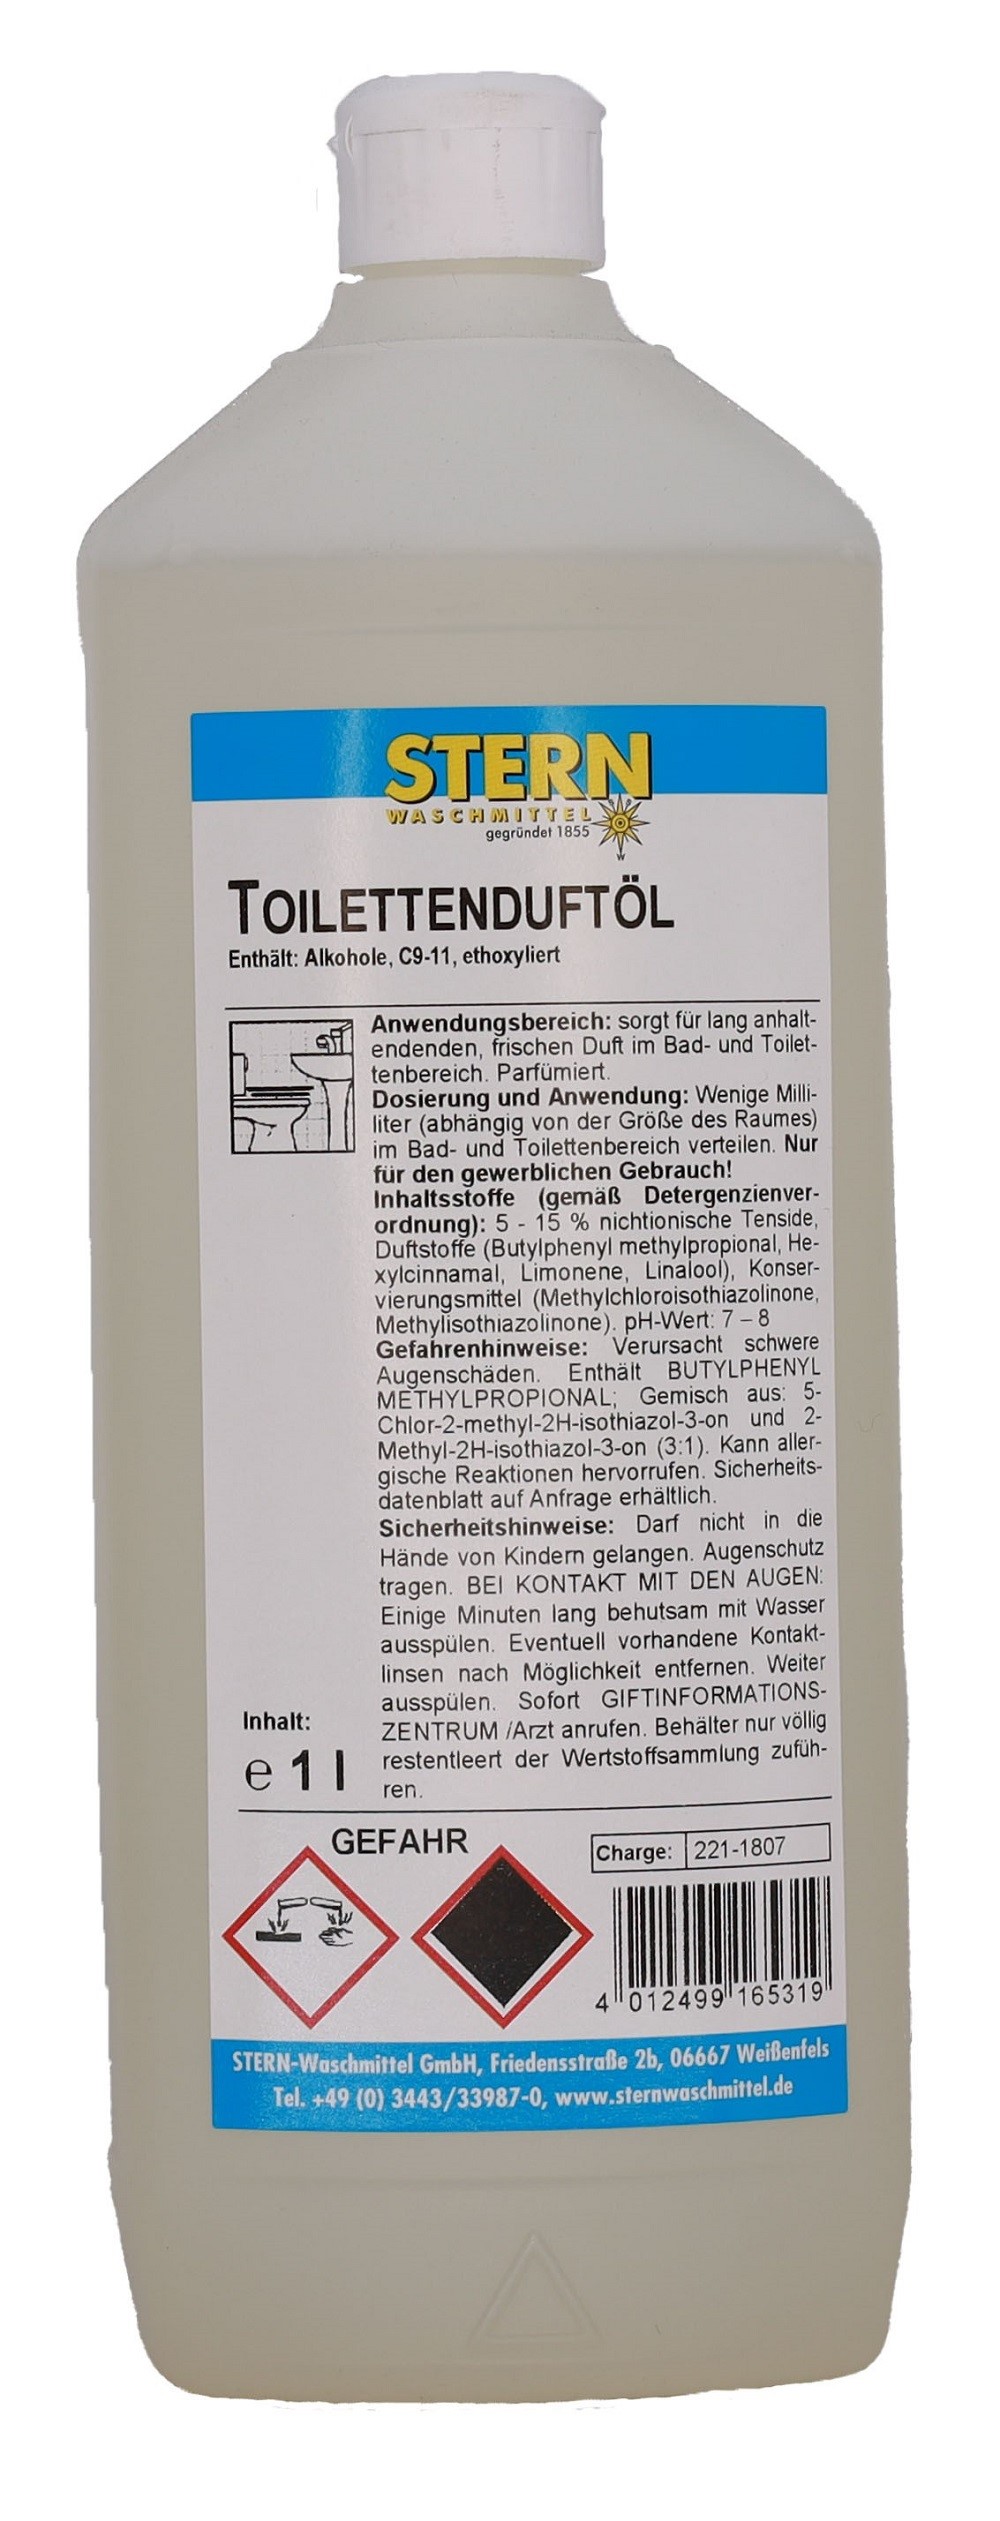 Produktbild: STERN Toilettenduftöl 1l